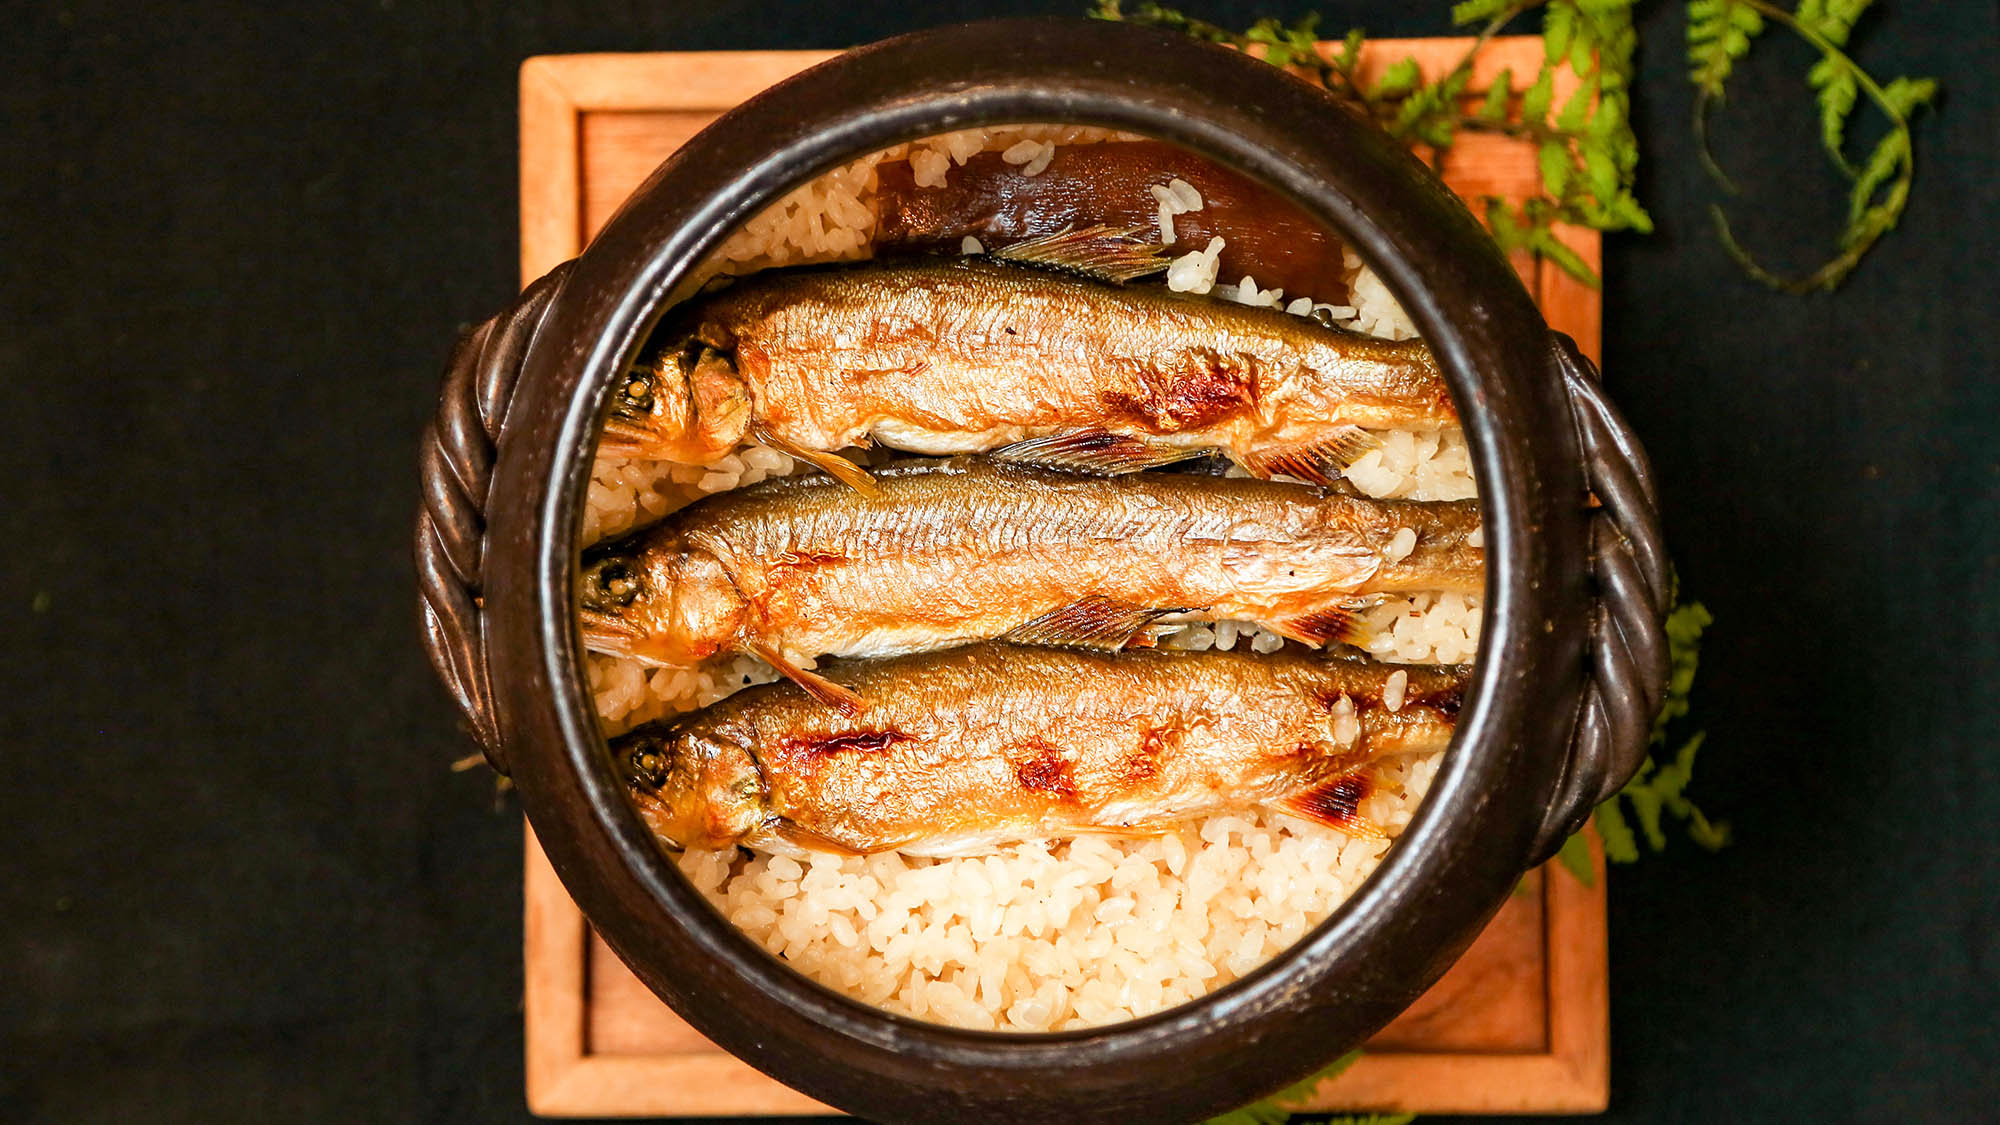 ・【鮎御膳】土鍋で炊いた鮎ご飯。鮎の出汁を吸った米が美味です